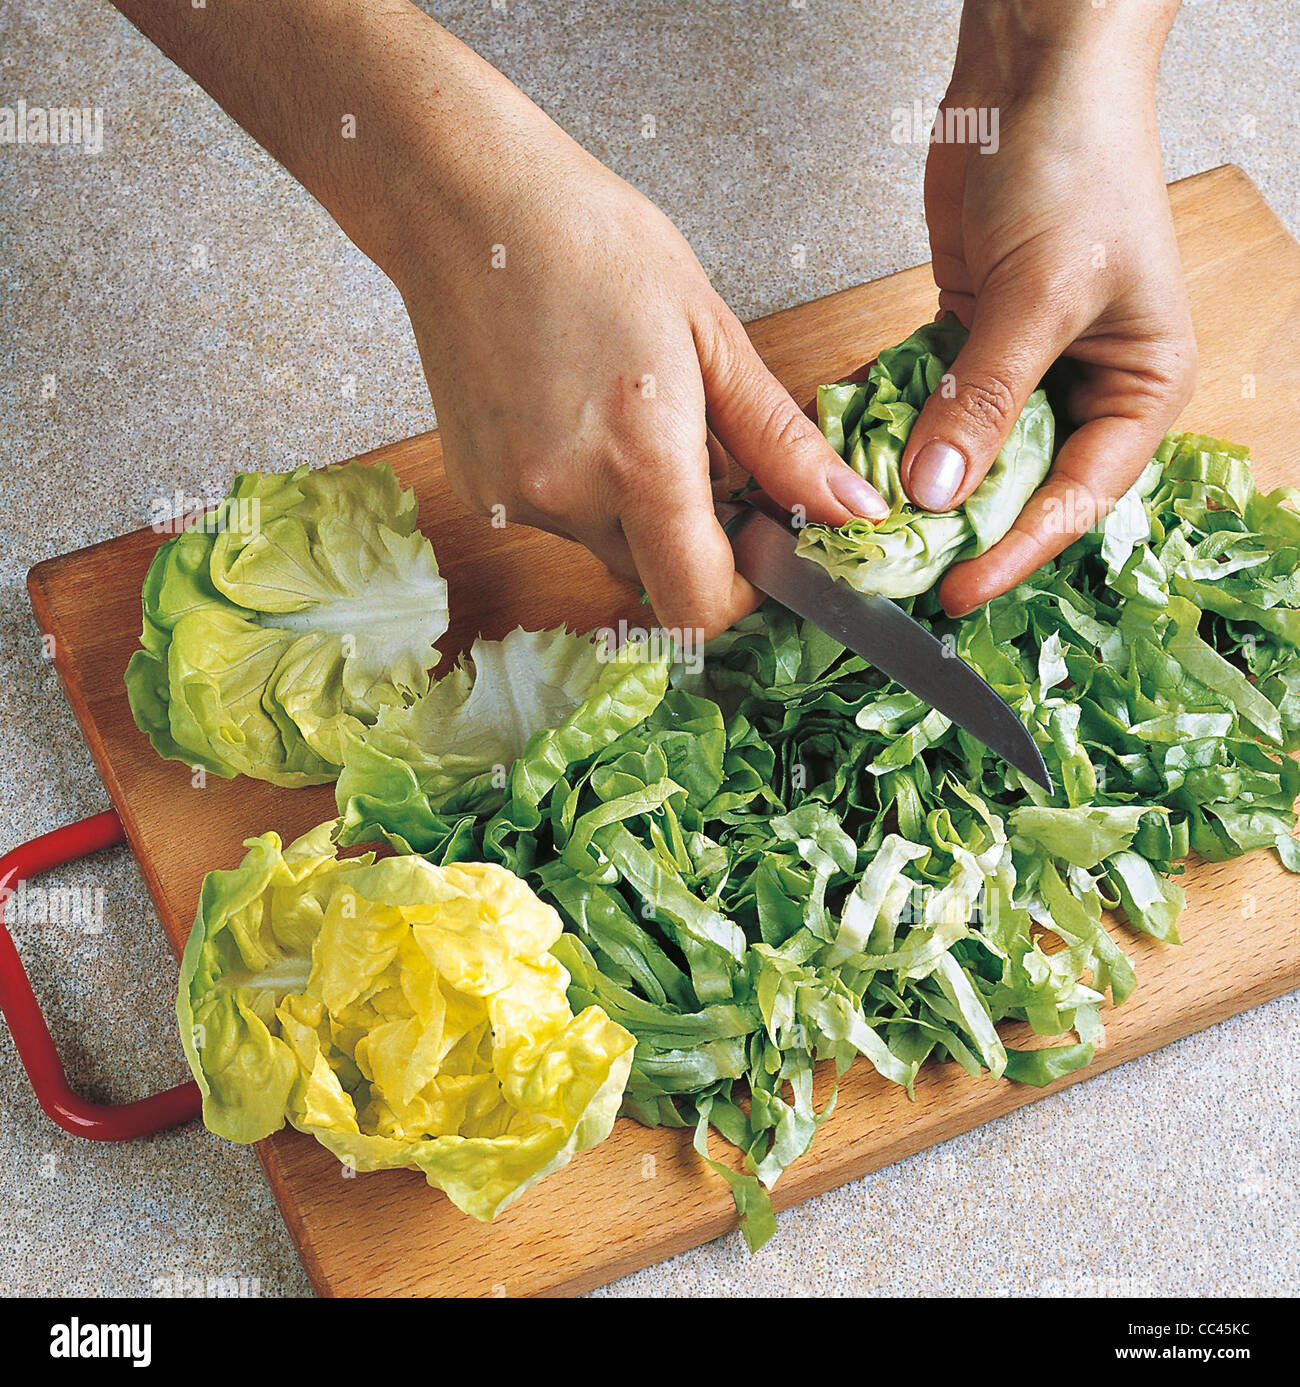 Cucina: insalata di lattuga pere e noci 2 Foto Stock